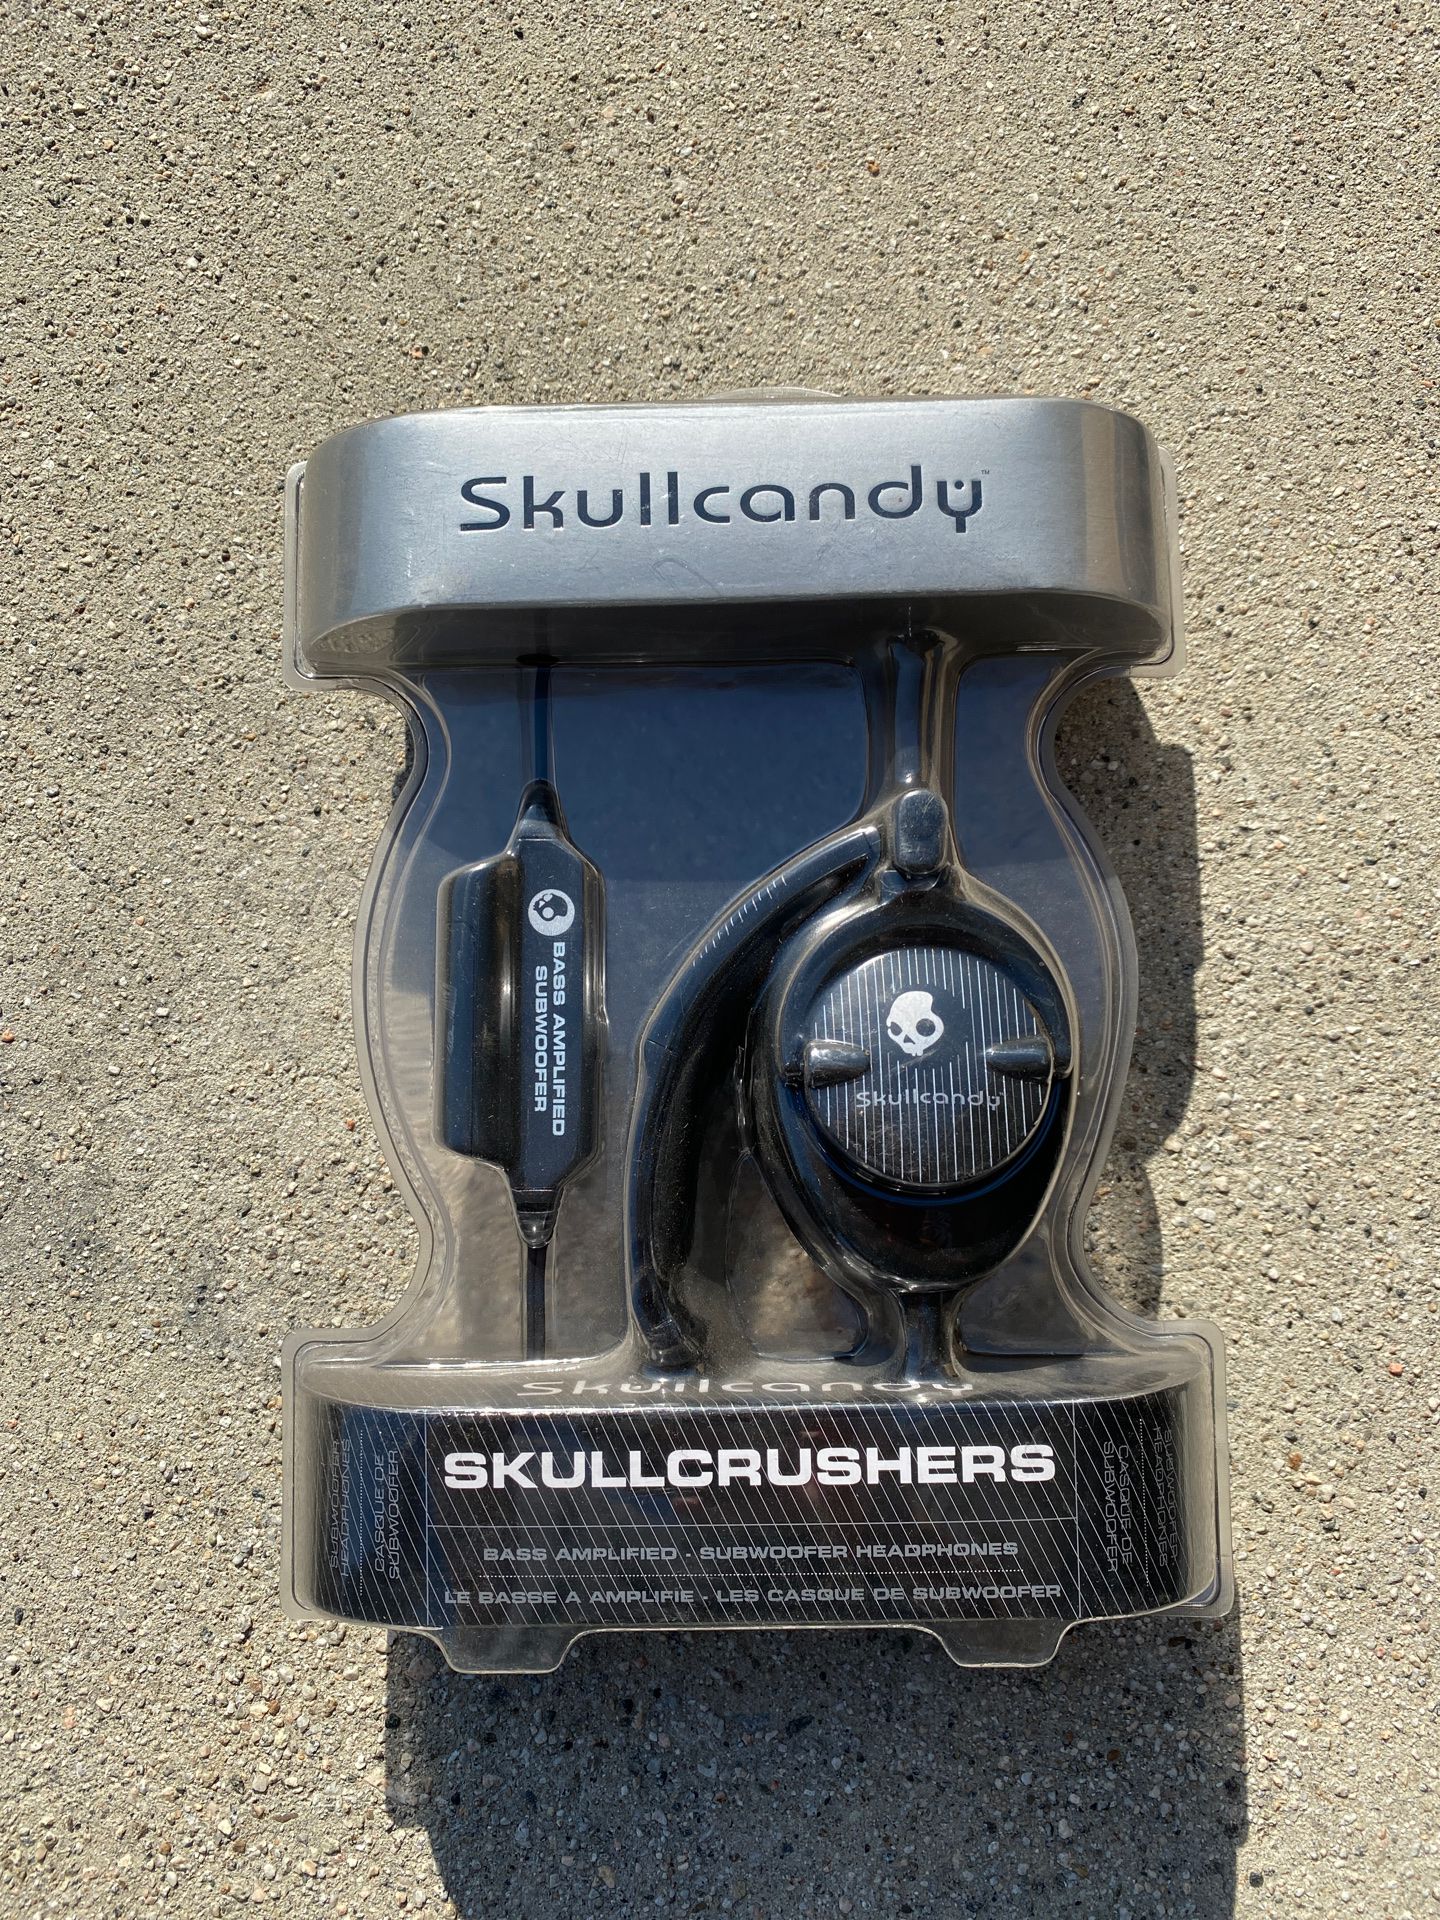 Skullcandy Skullcrushers stereo headphones  Brand New !!